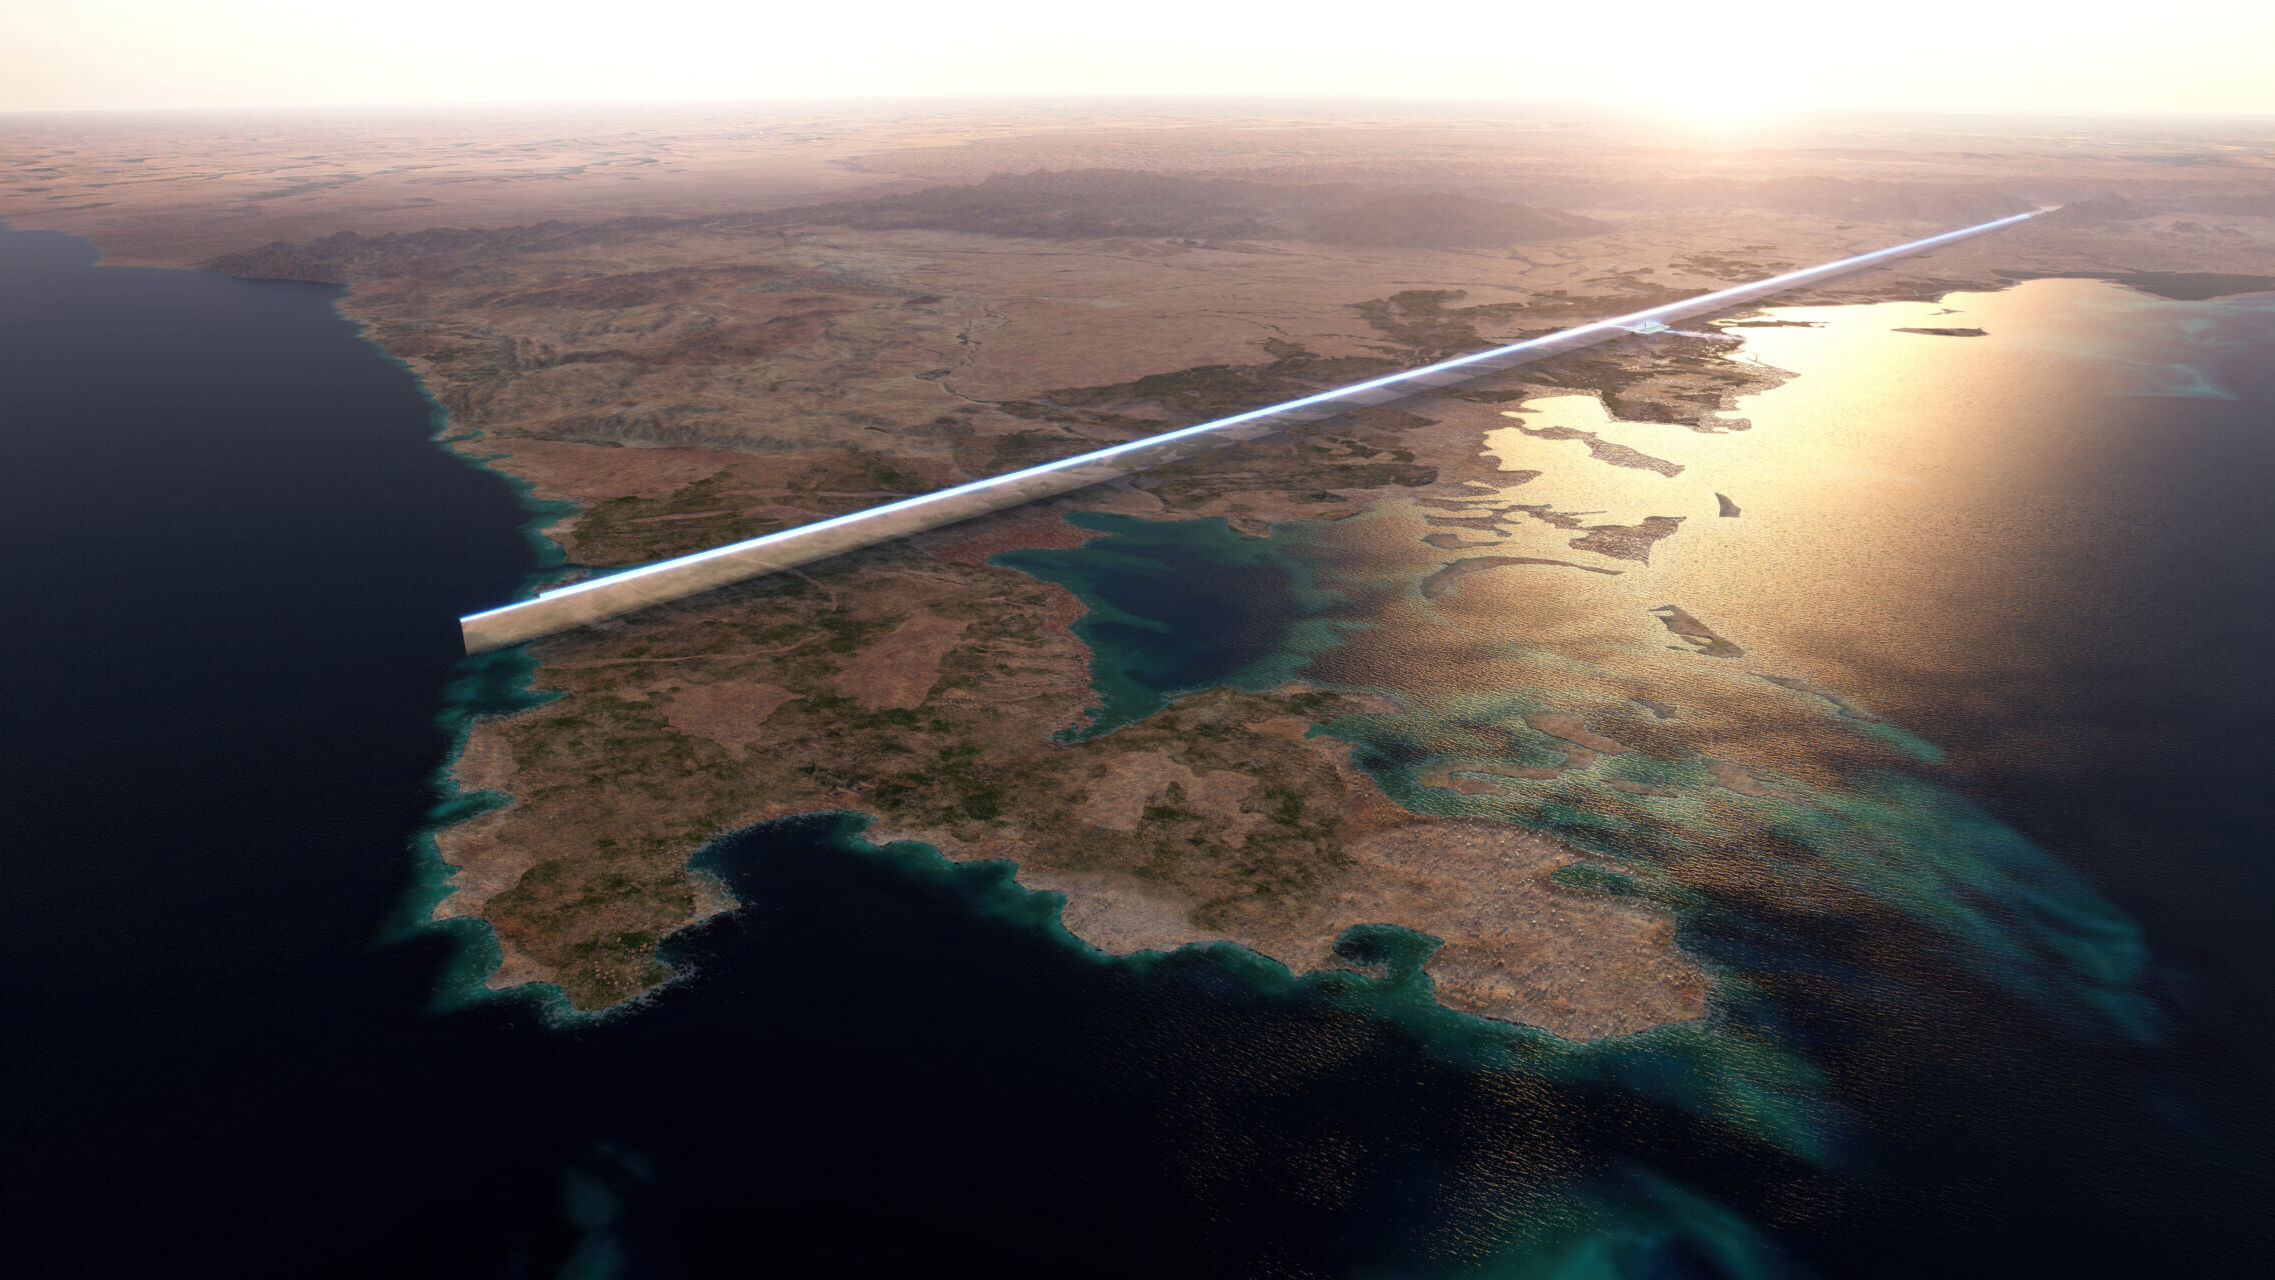 170-километровая «Линия» в Саудовской Аравии станет первым линейным городом в мире.